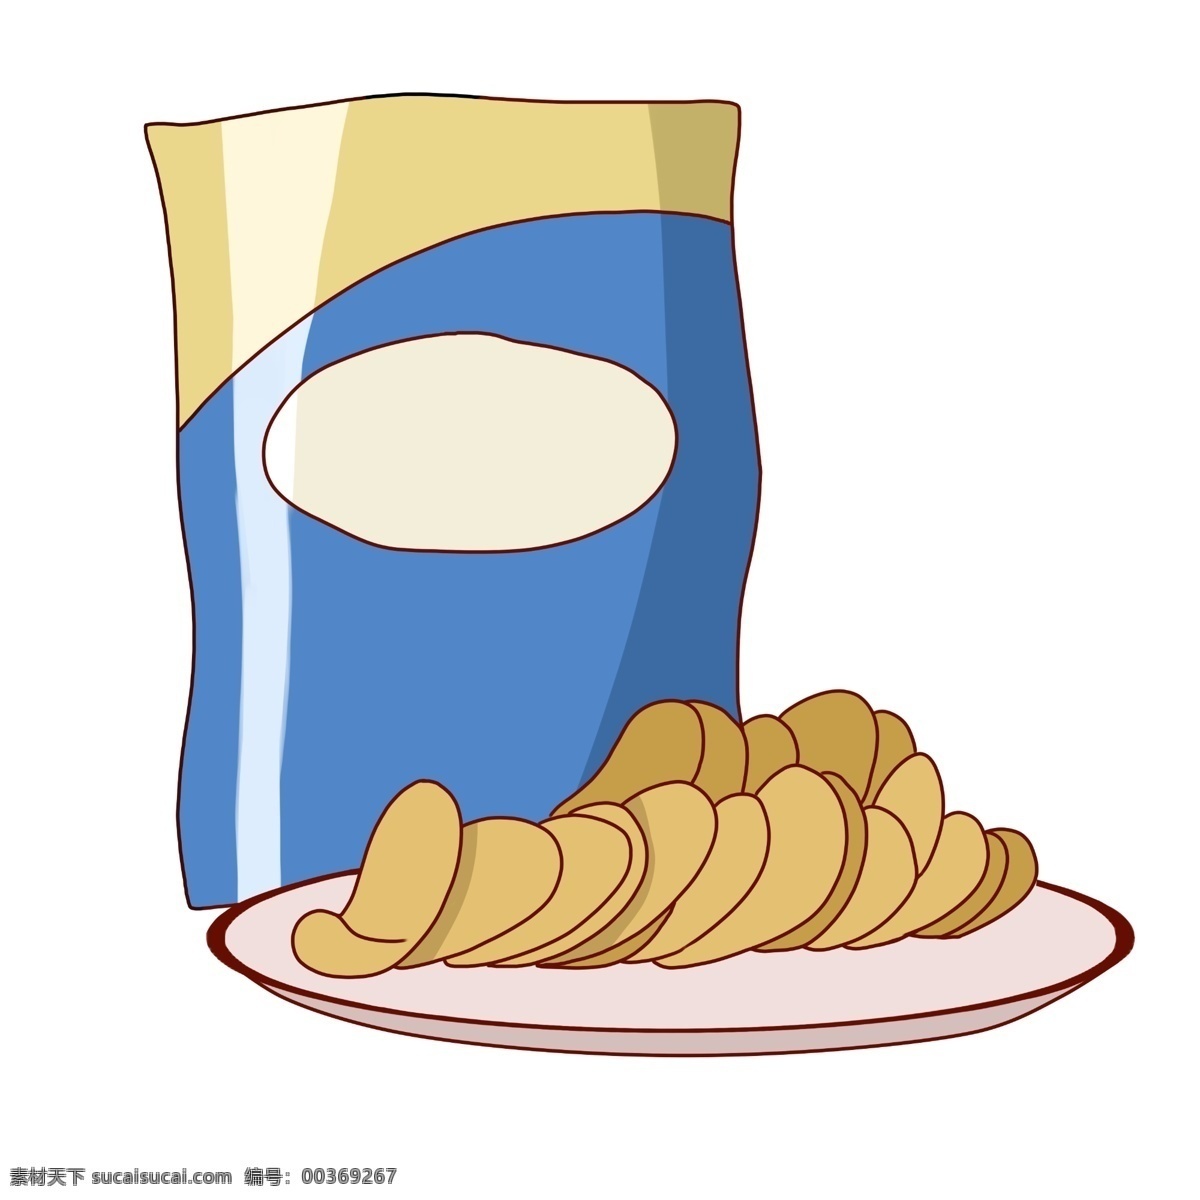 精致 的卡 通 薯片 插画 美味的薯片 蓝色的包装 白色的盘子 薯片插画 小吃 美味的小吃 小吃插画 食物